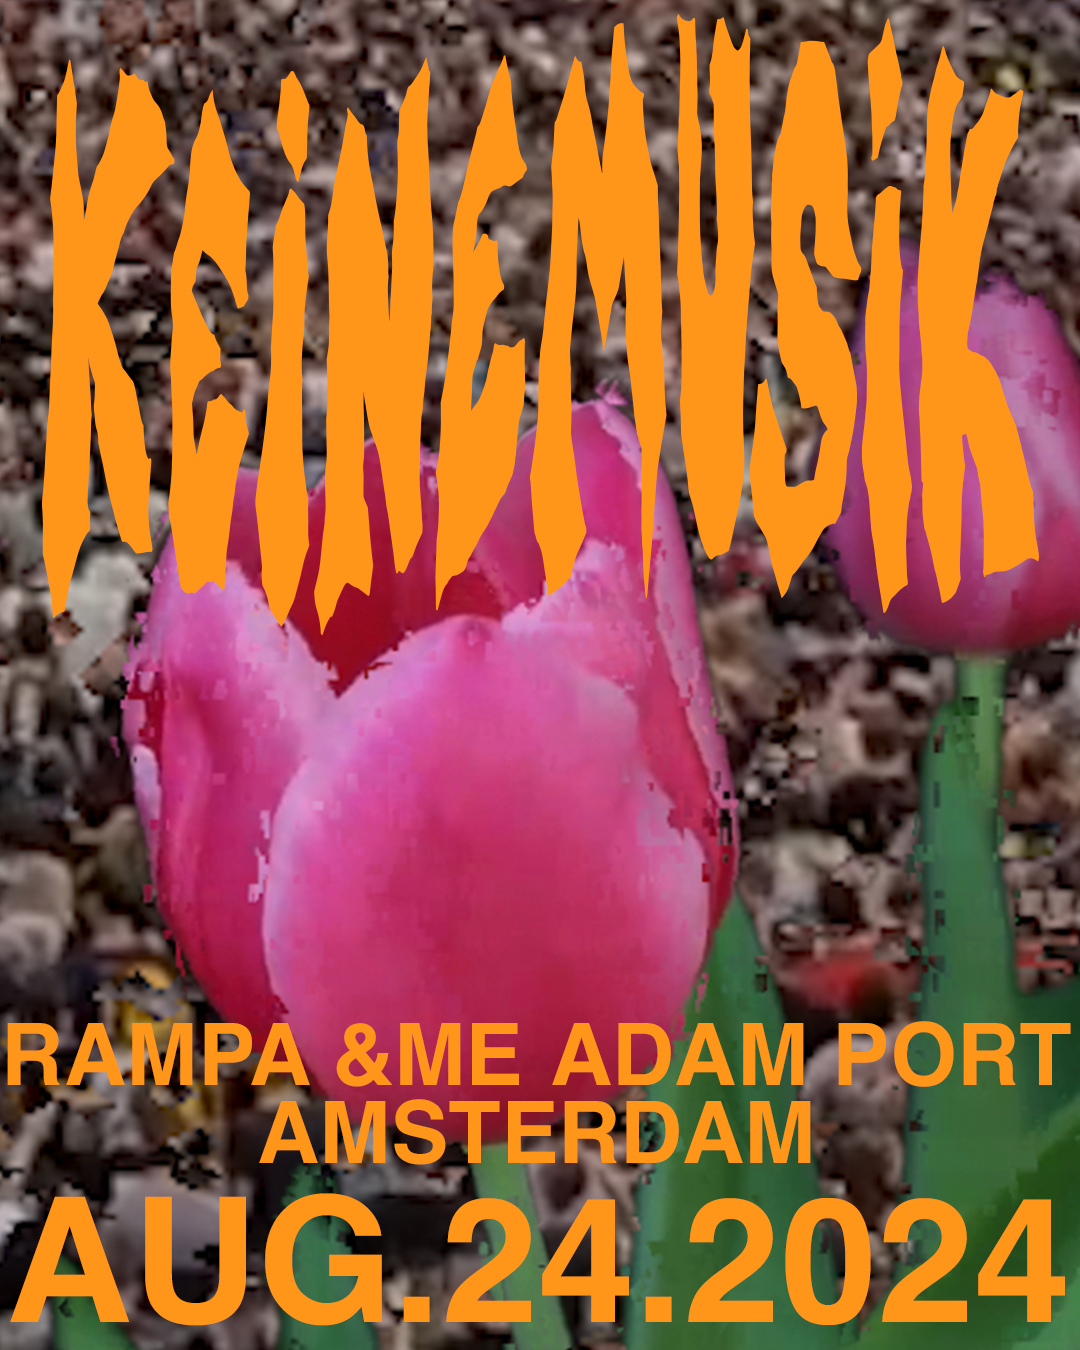 Keinemusik Amsterdam - フライヤー表